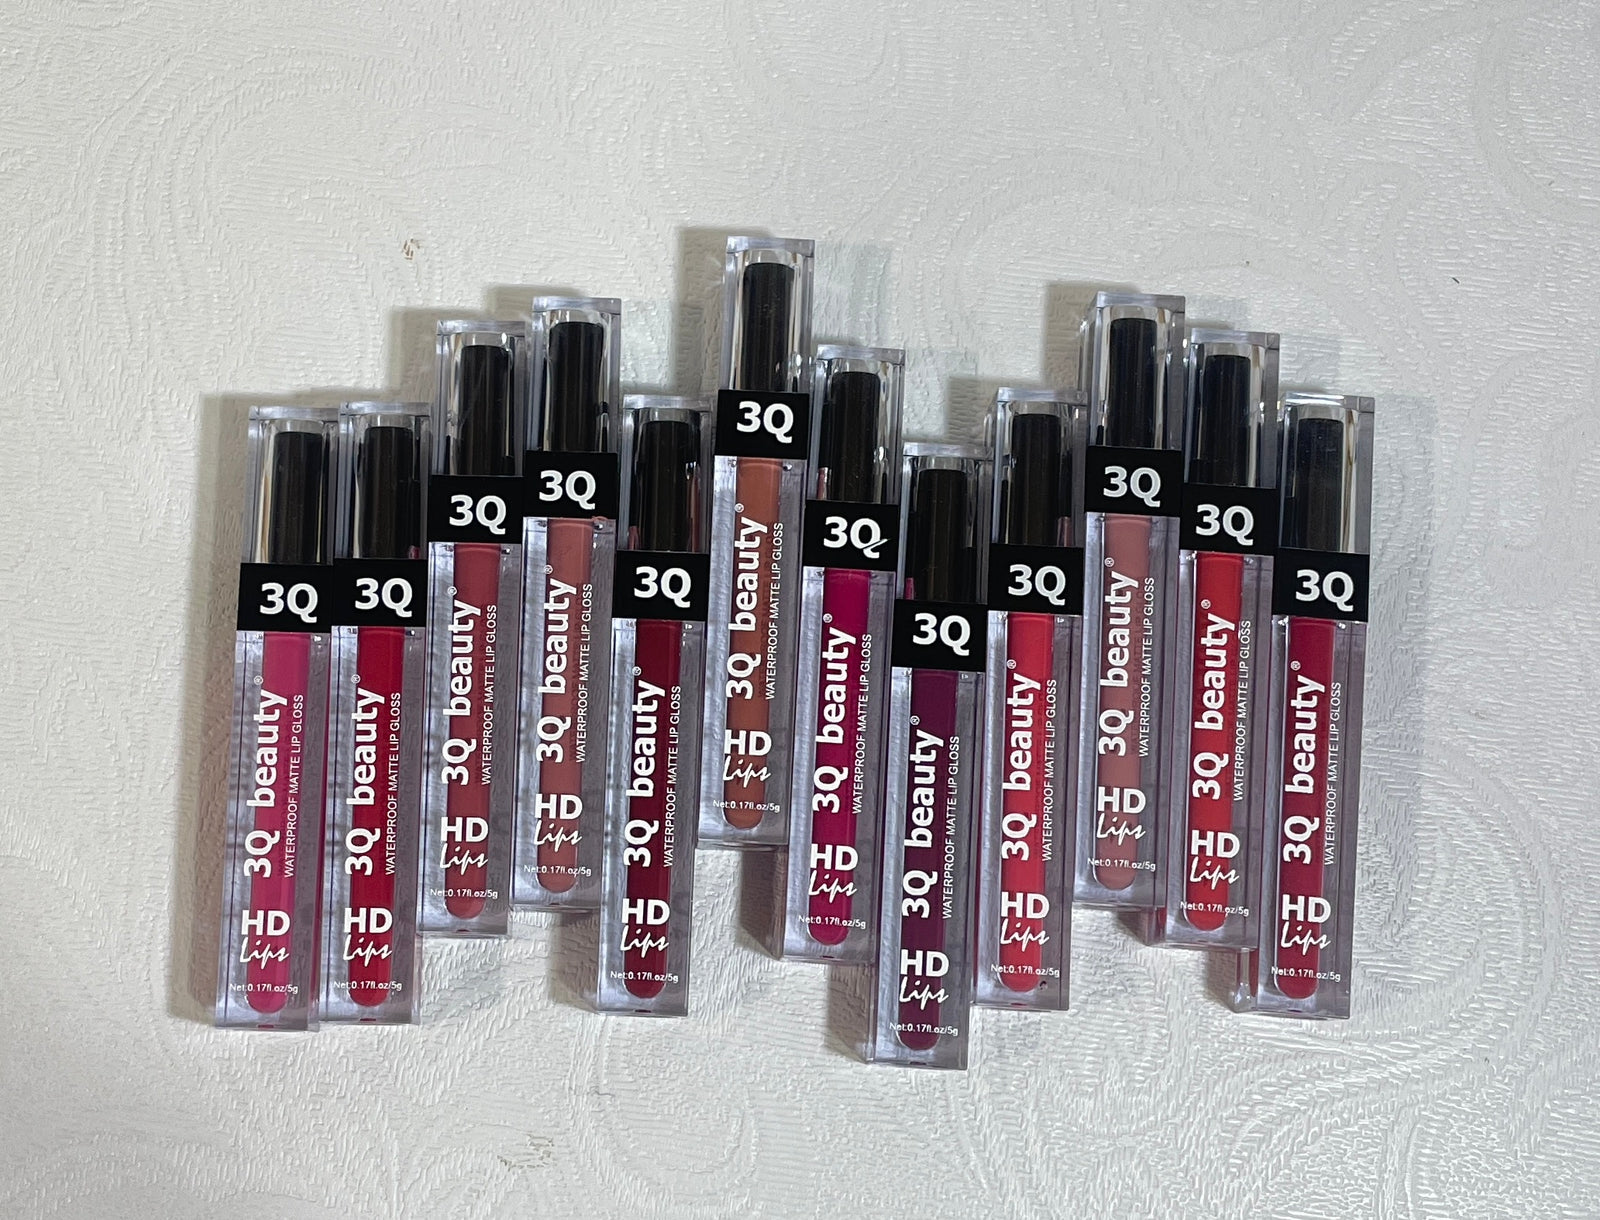 3Q Liquid Matte Lip Gloss Set